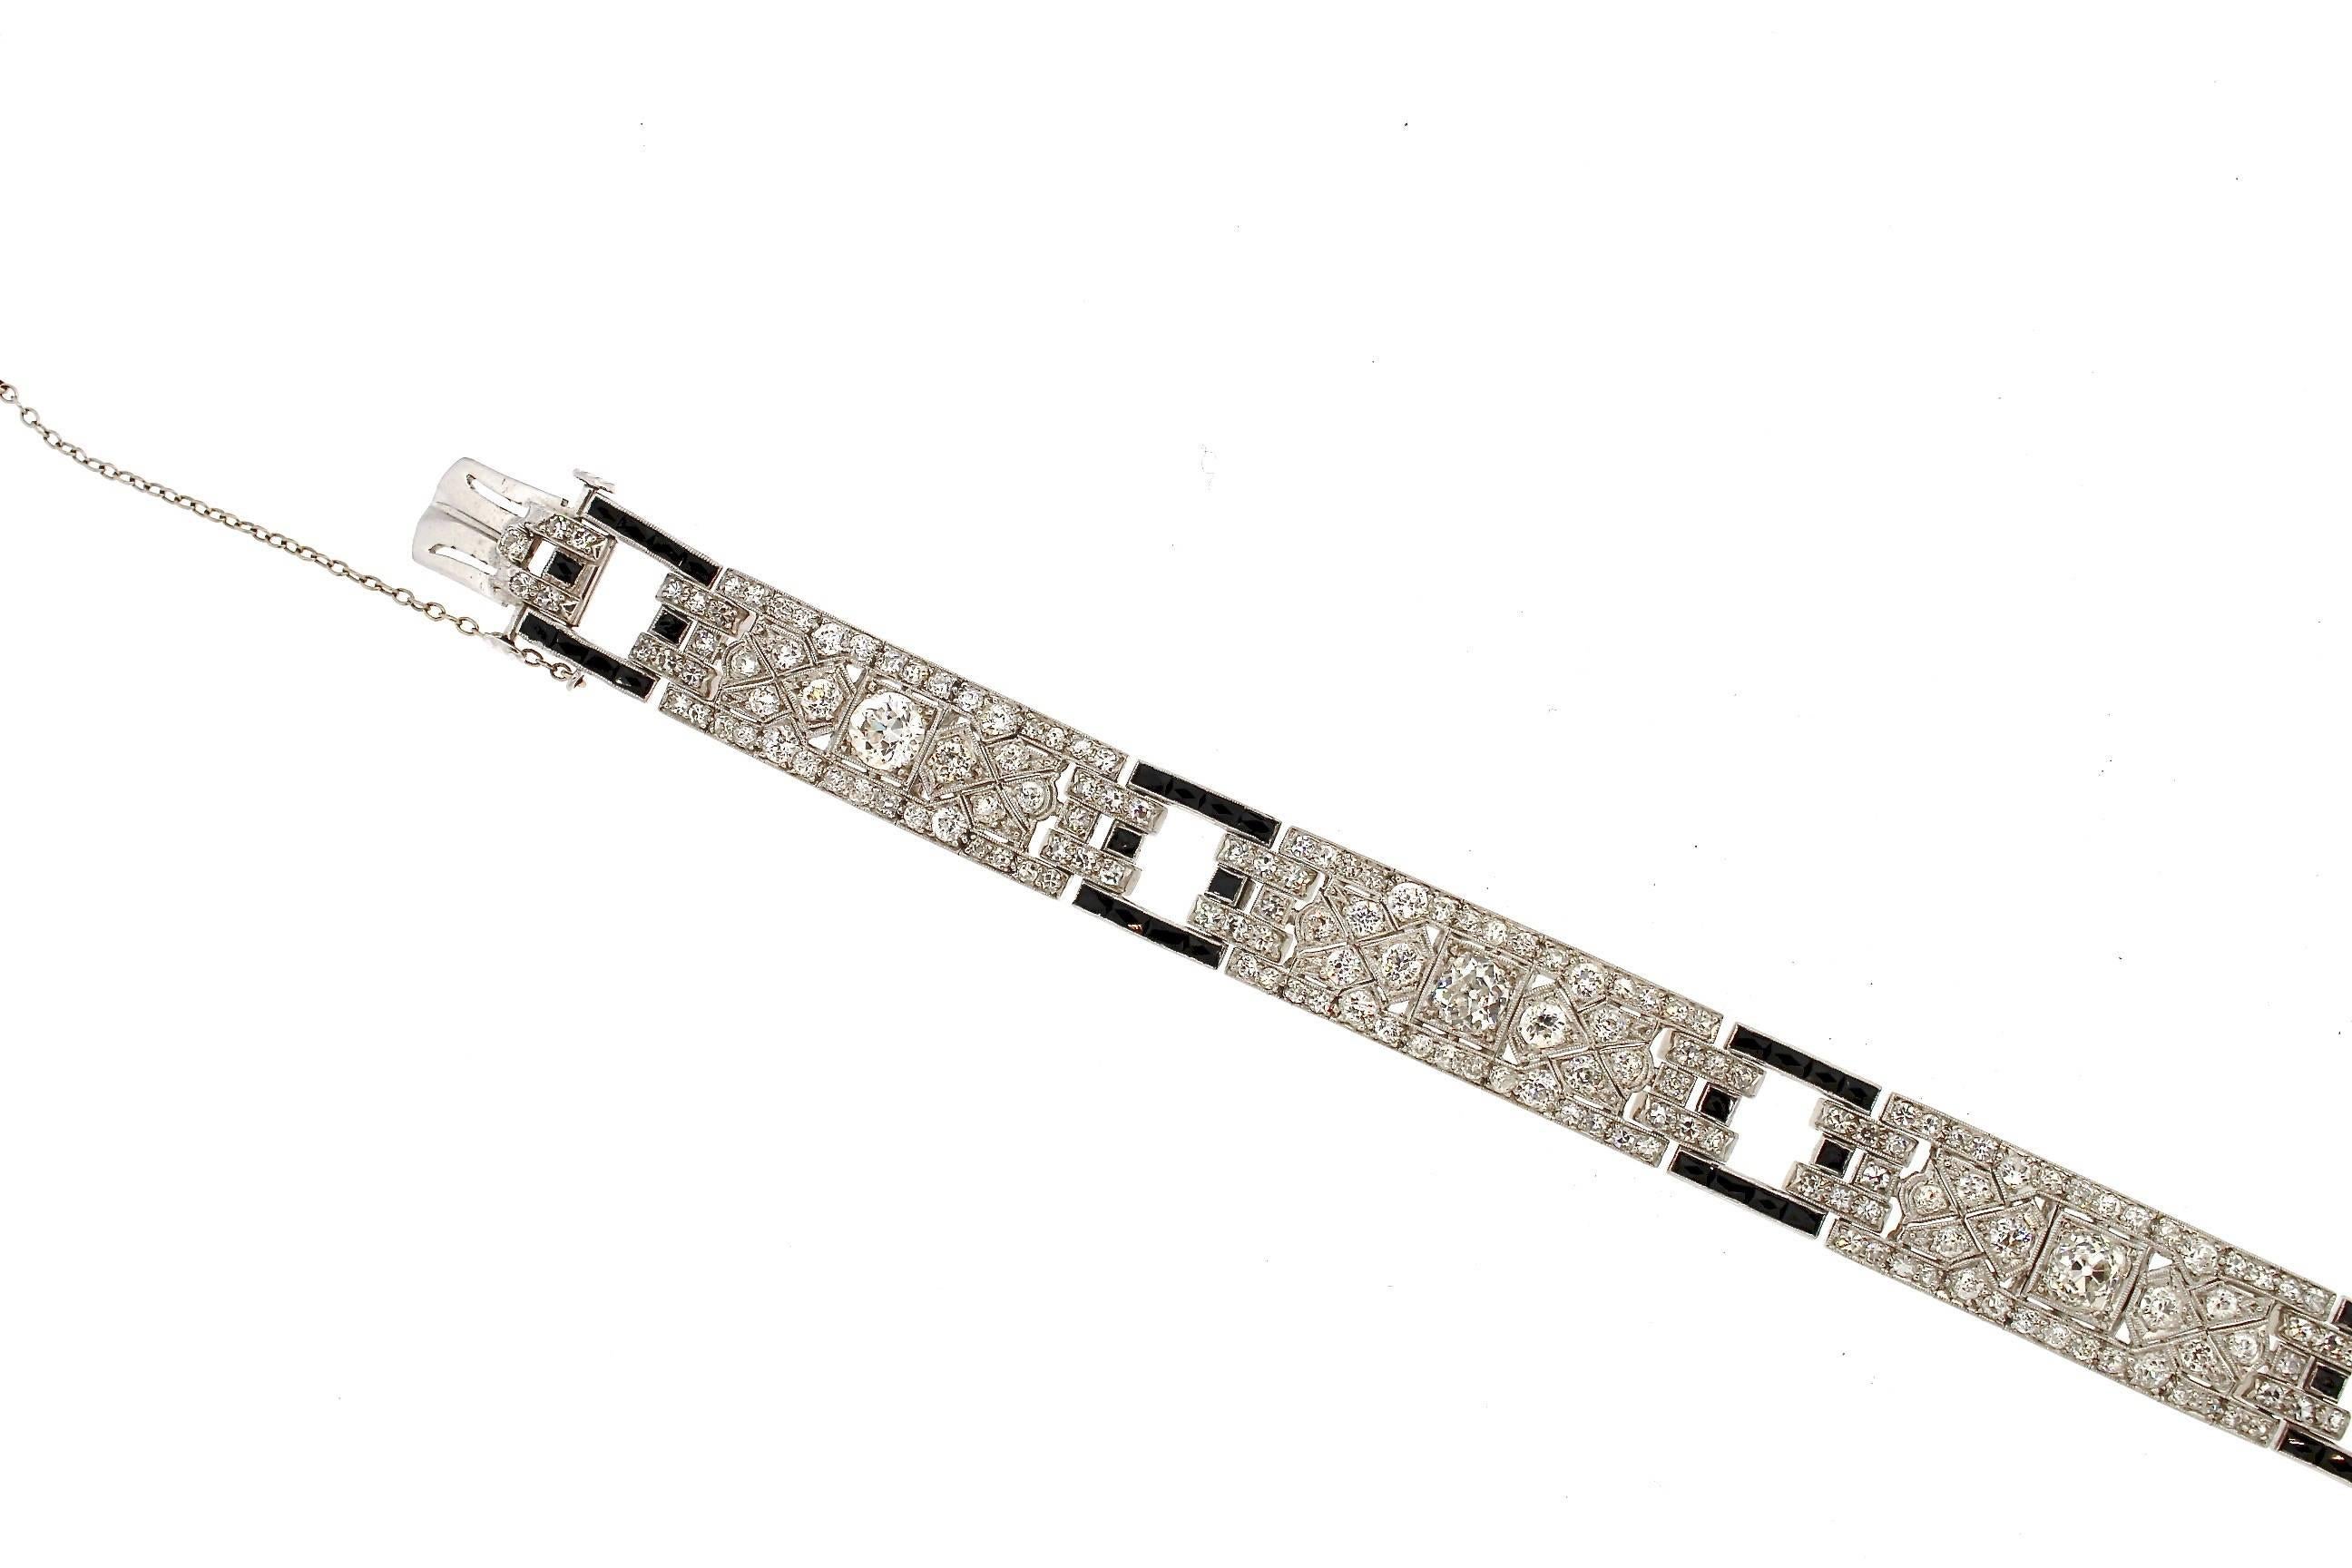 Ein einfaches und tragbares Platin-Armband im Art-Déco-Stil mit Diamanten und Onyx, um 1925.  Wunderschöne Onyxe mit französischem Schliff bilden offene, quadratische Glieder, die drei identische Diamantenfelder miteinander verbinden.  Es ist